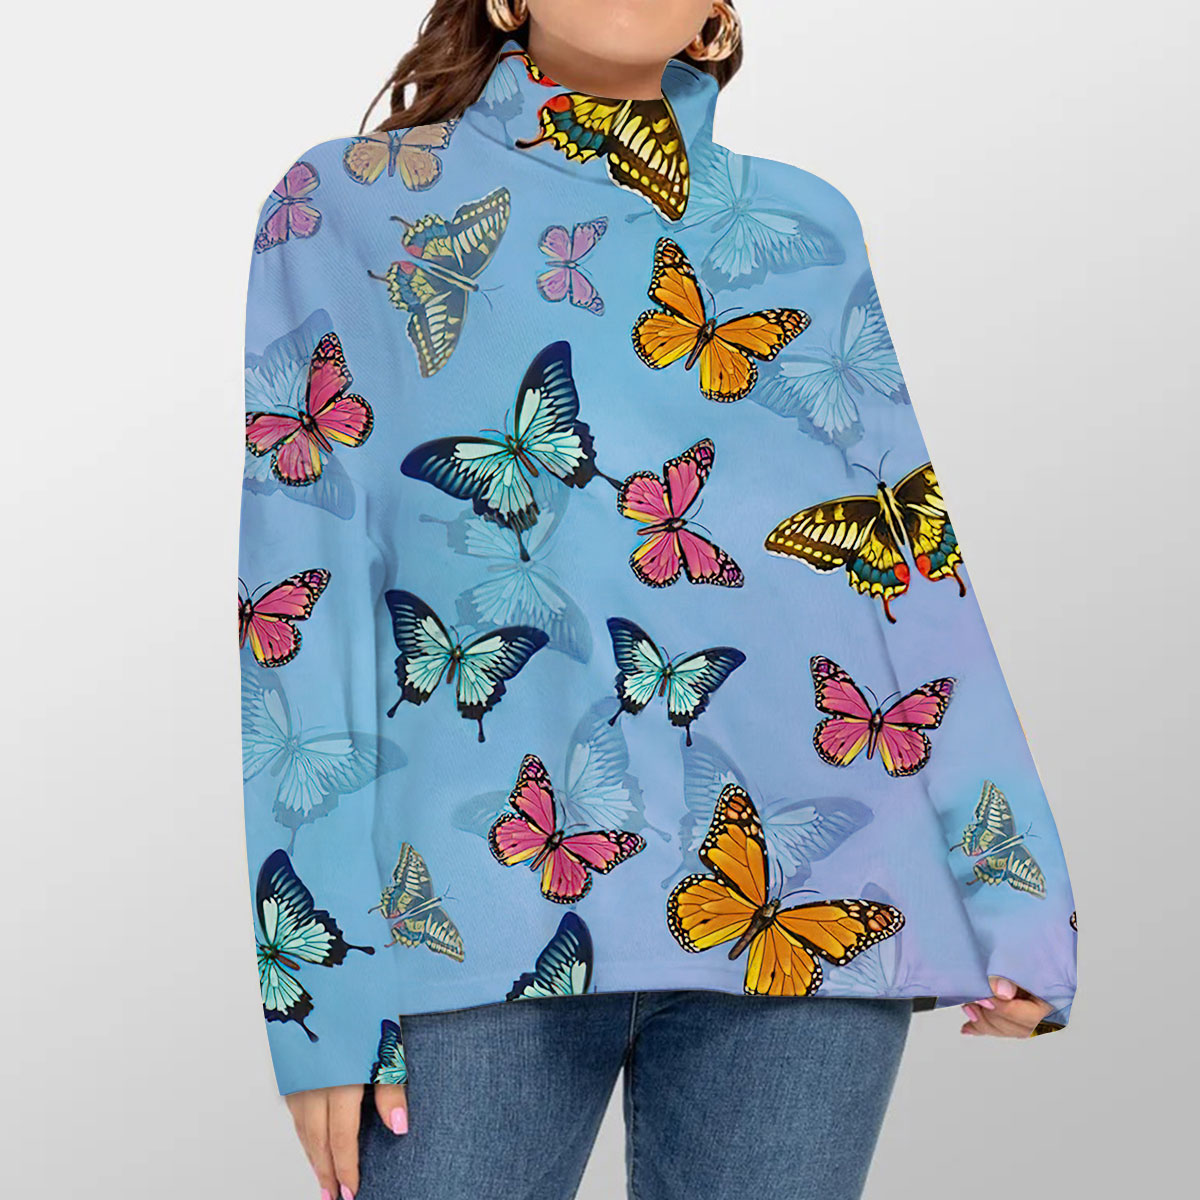 Butterfly Turtleneck Sweater